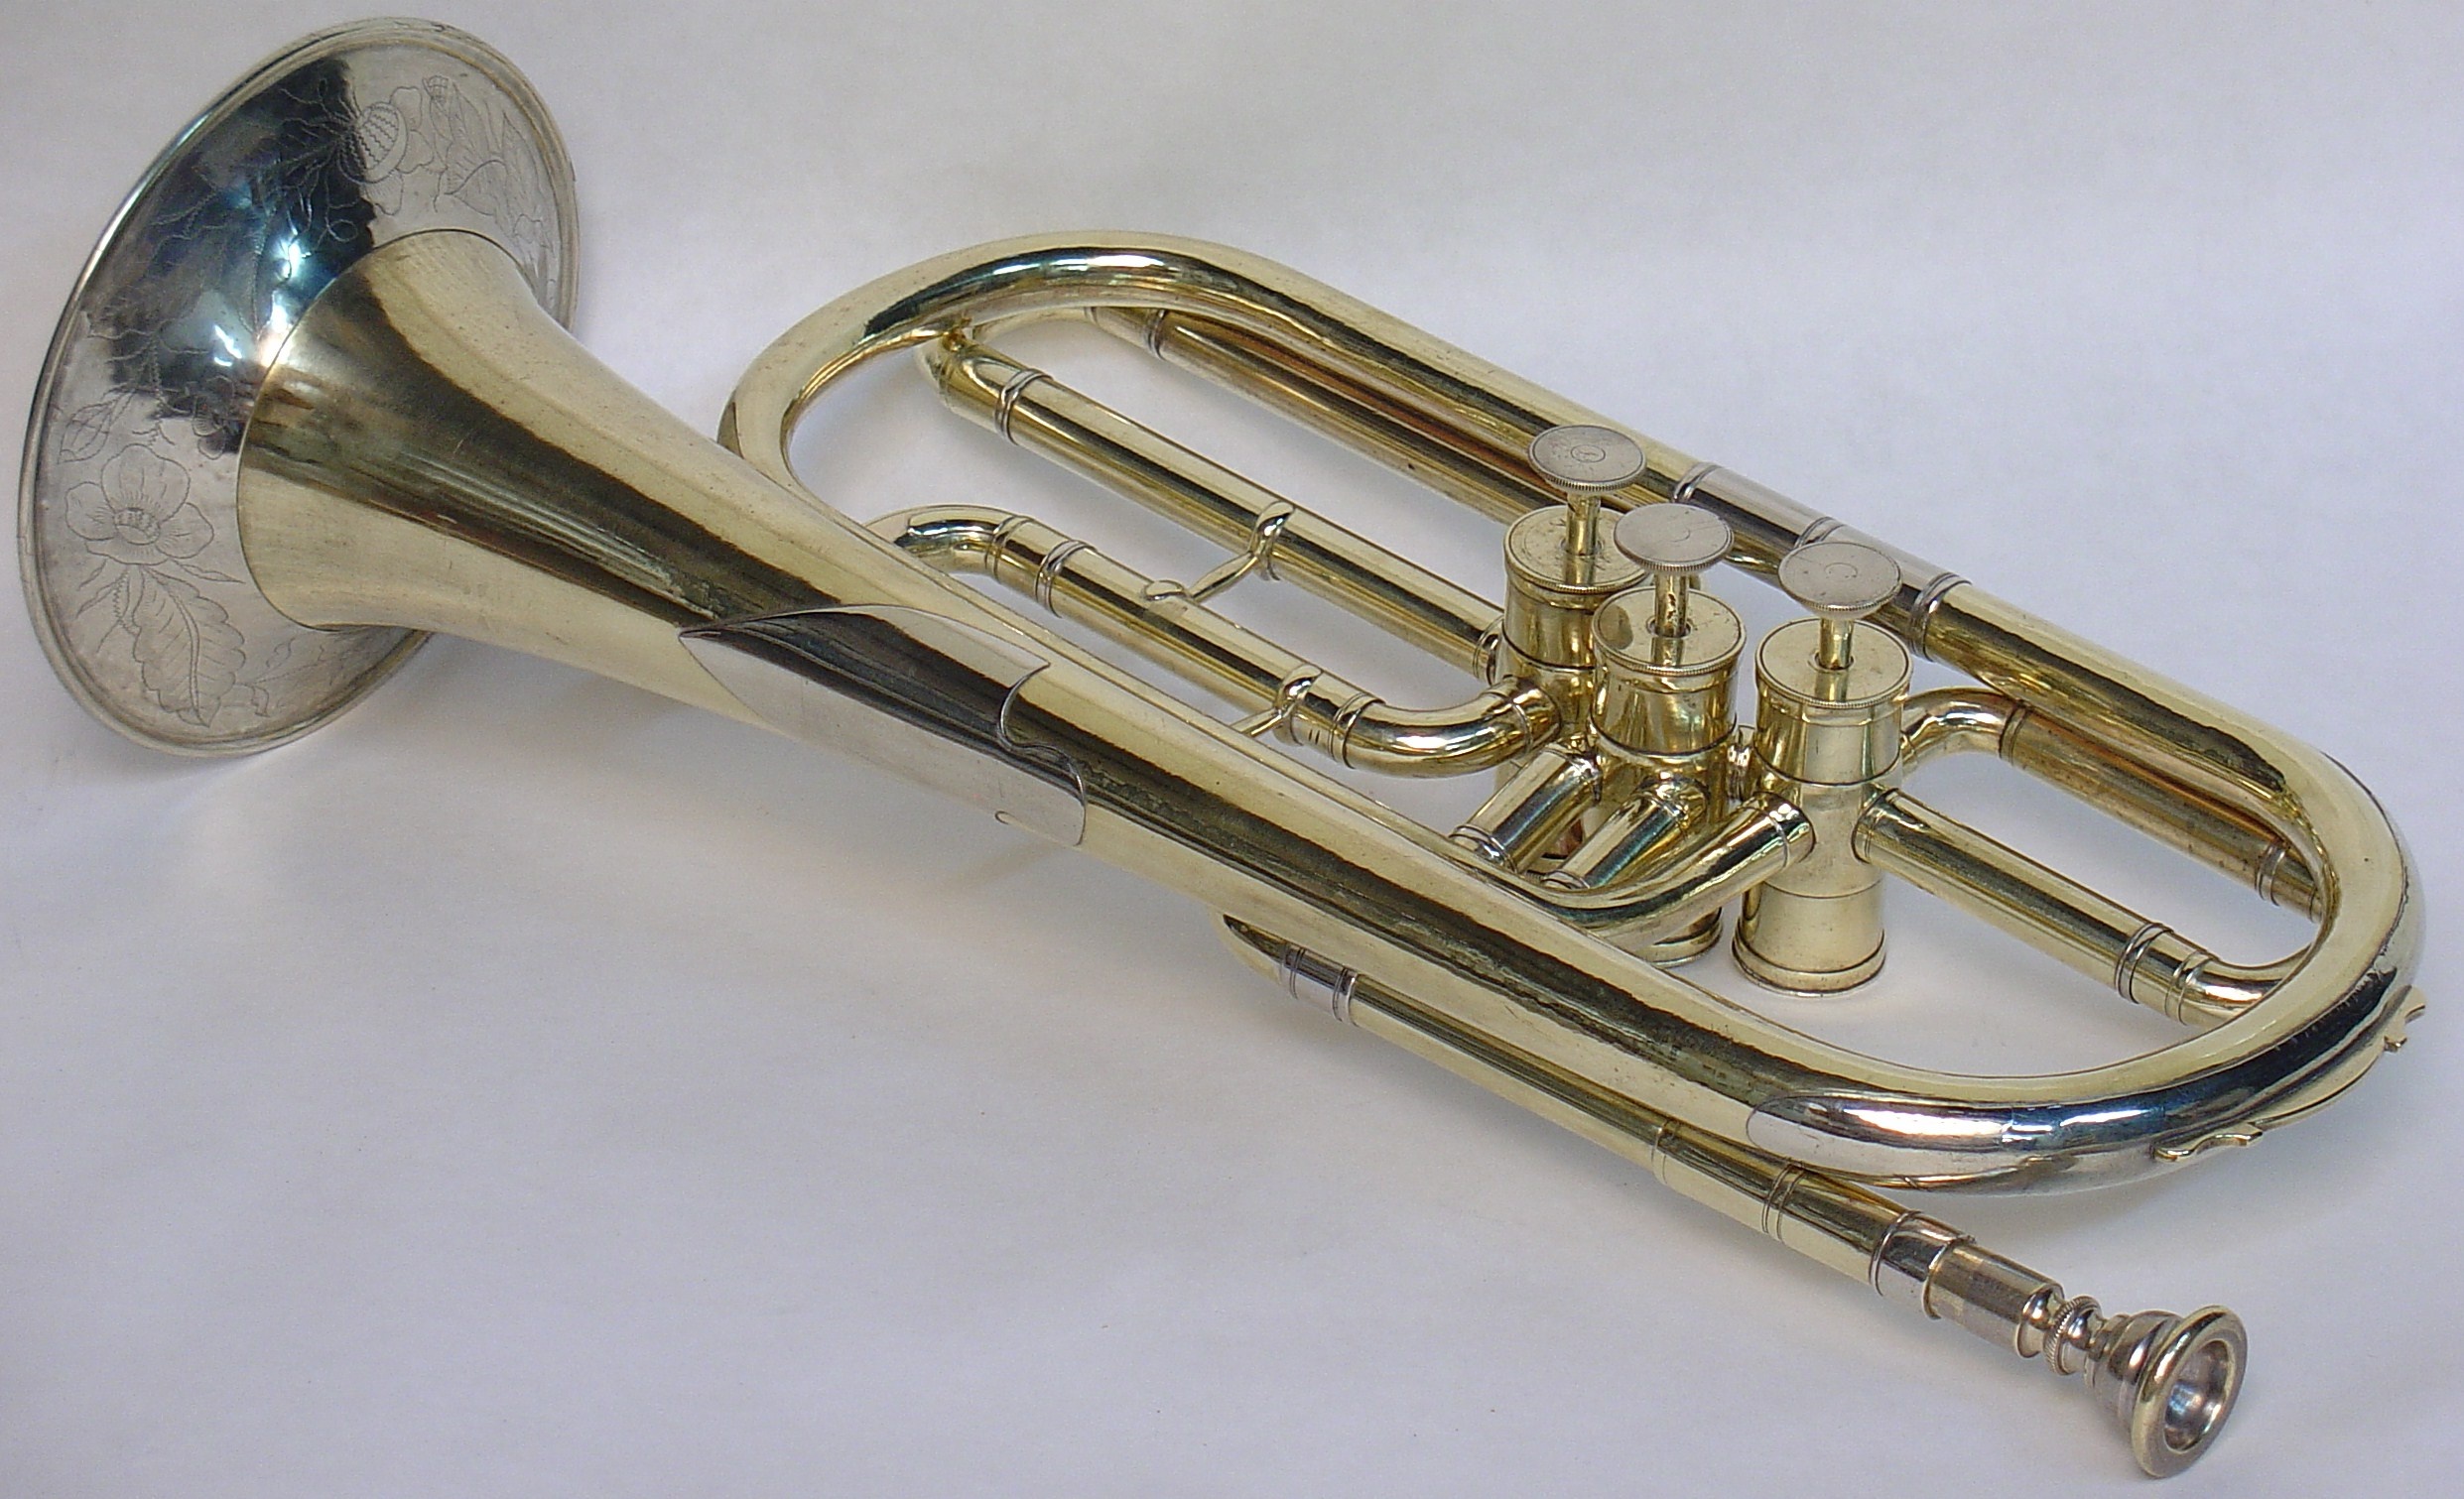 Trumpet: Robb Stewart Brass Instruments, German Trumpet in G with Berliner Valves, A brass instrument. 2490x1520 HD Background.